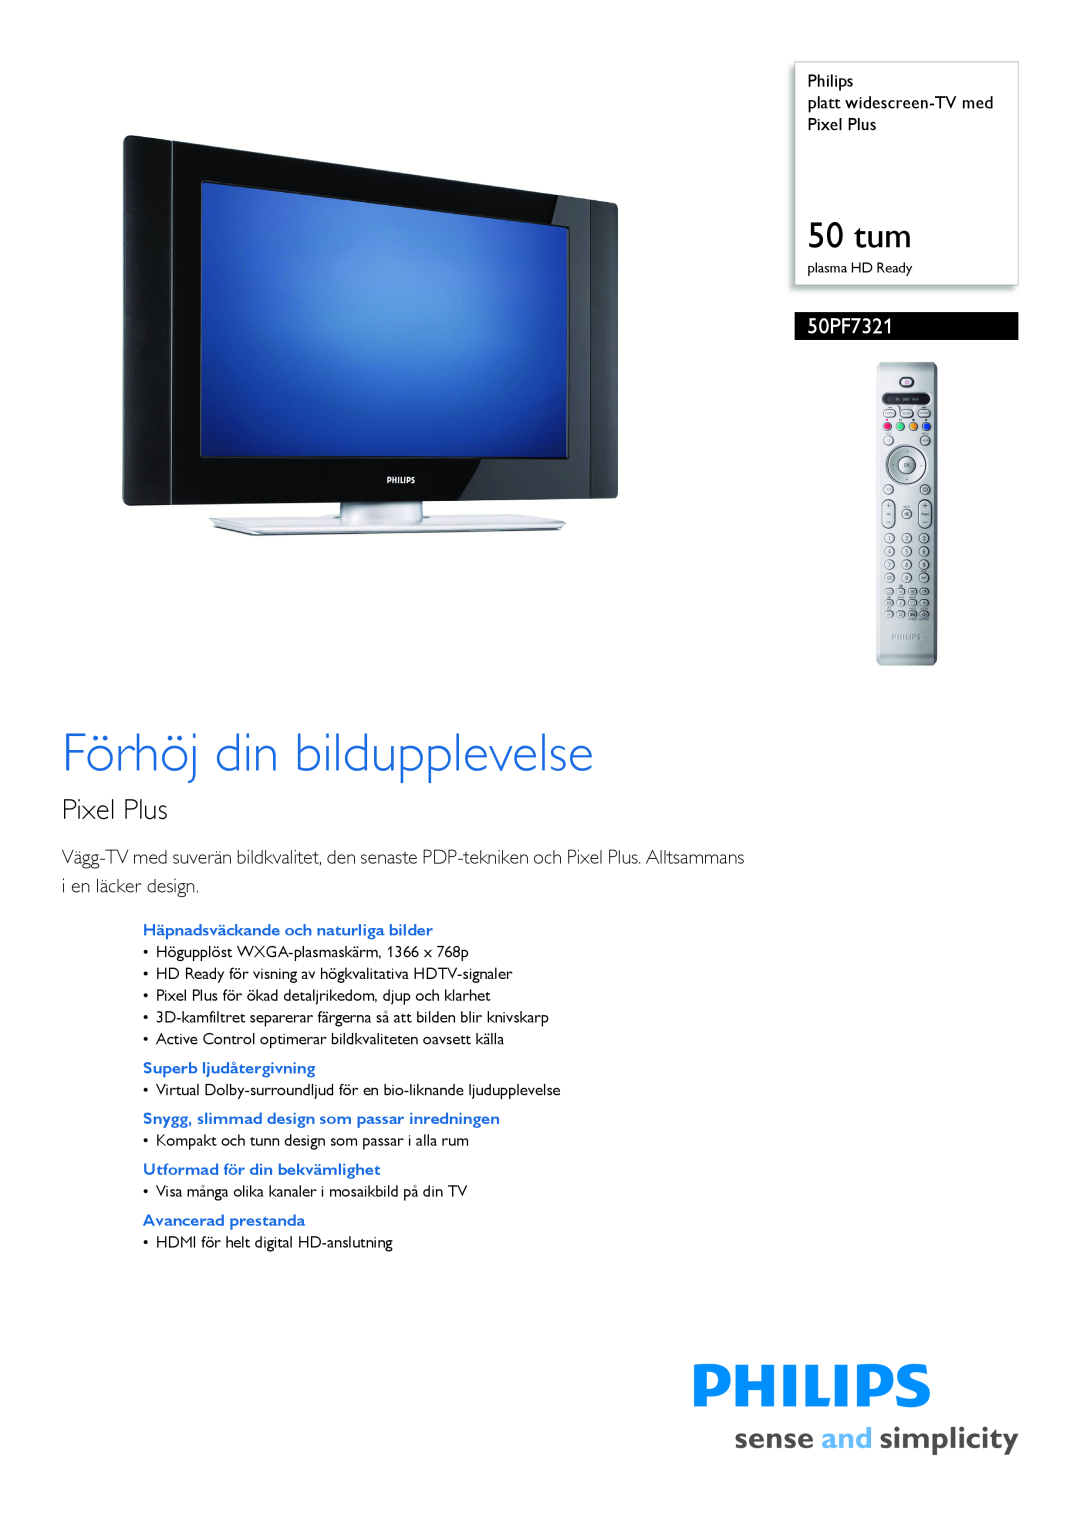 Philips 50PF7321 manual Philips platt widescreen-TVmed Pixel Plus, Häpnadsväckande och naturliga bilder, 50 tum 